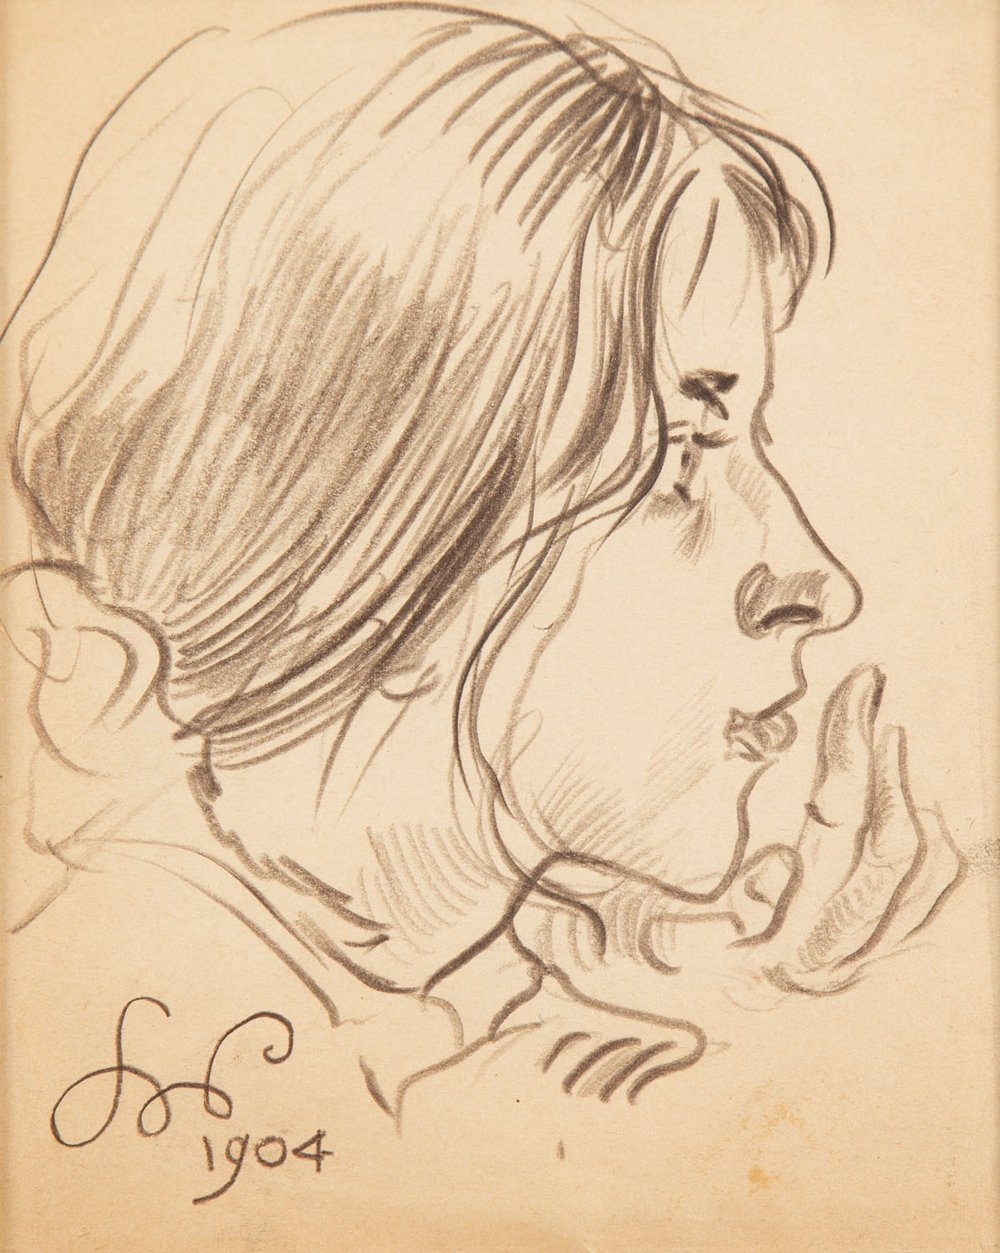 "Girl's Profile, Study" by Stanislaw Wyspianski, 1904